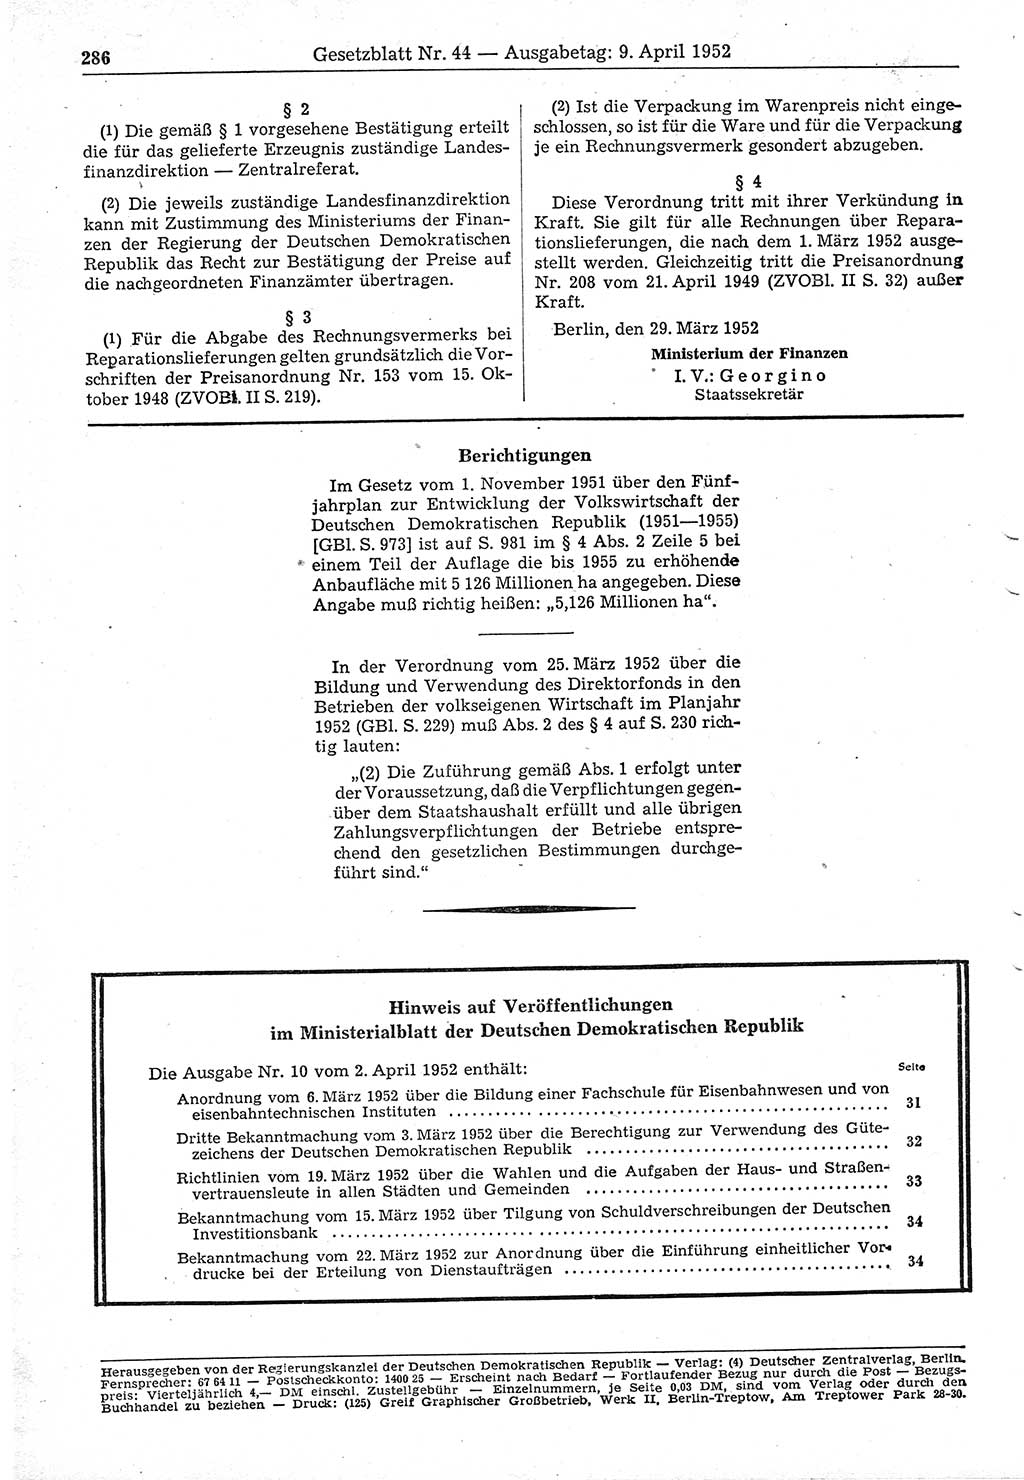 Gesetzblatt (GBl.) der Deutschen Demokratischen Republik (DDR) 1952, Seite 286 (GBl. DDR 1952, S. 286)